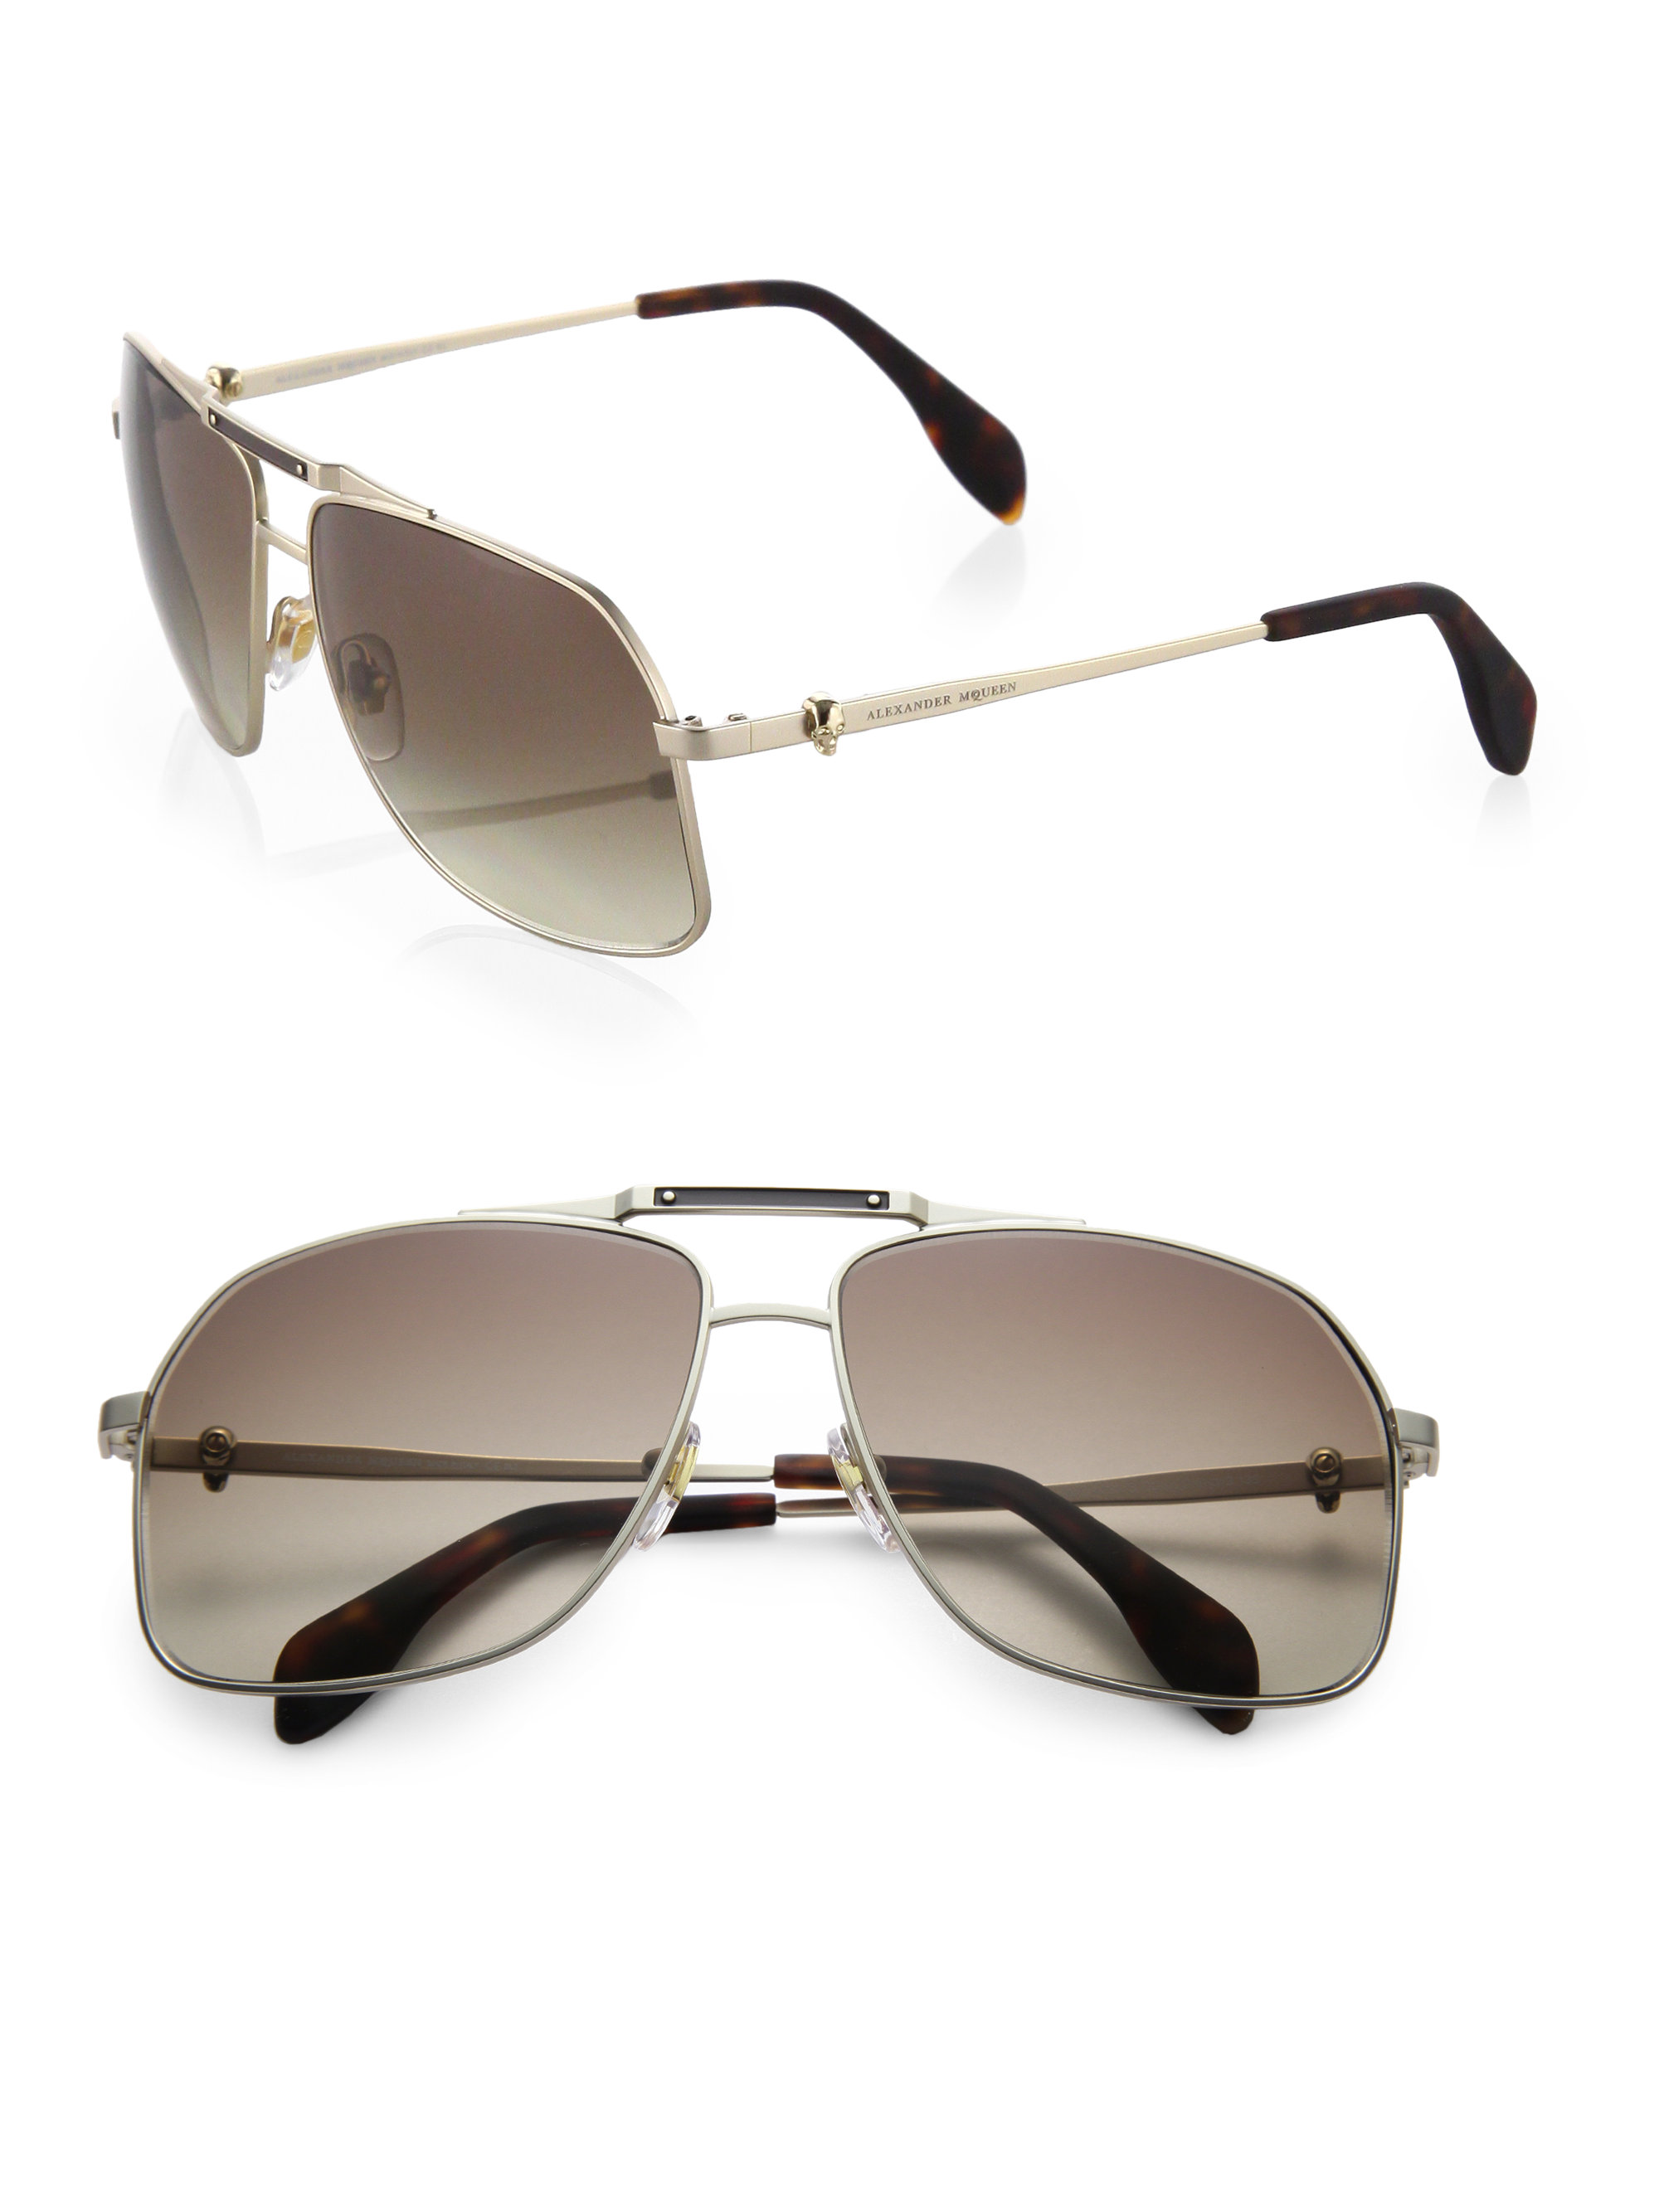 Lyst - Alexander Mcqueen Metal Navigator Sunglasses in Metallic for Men